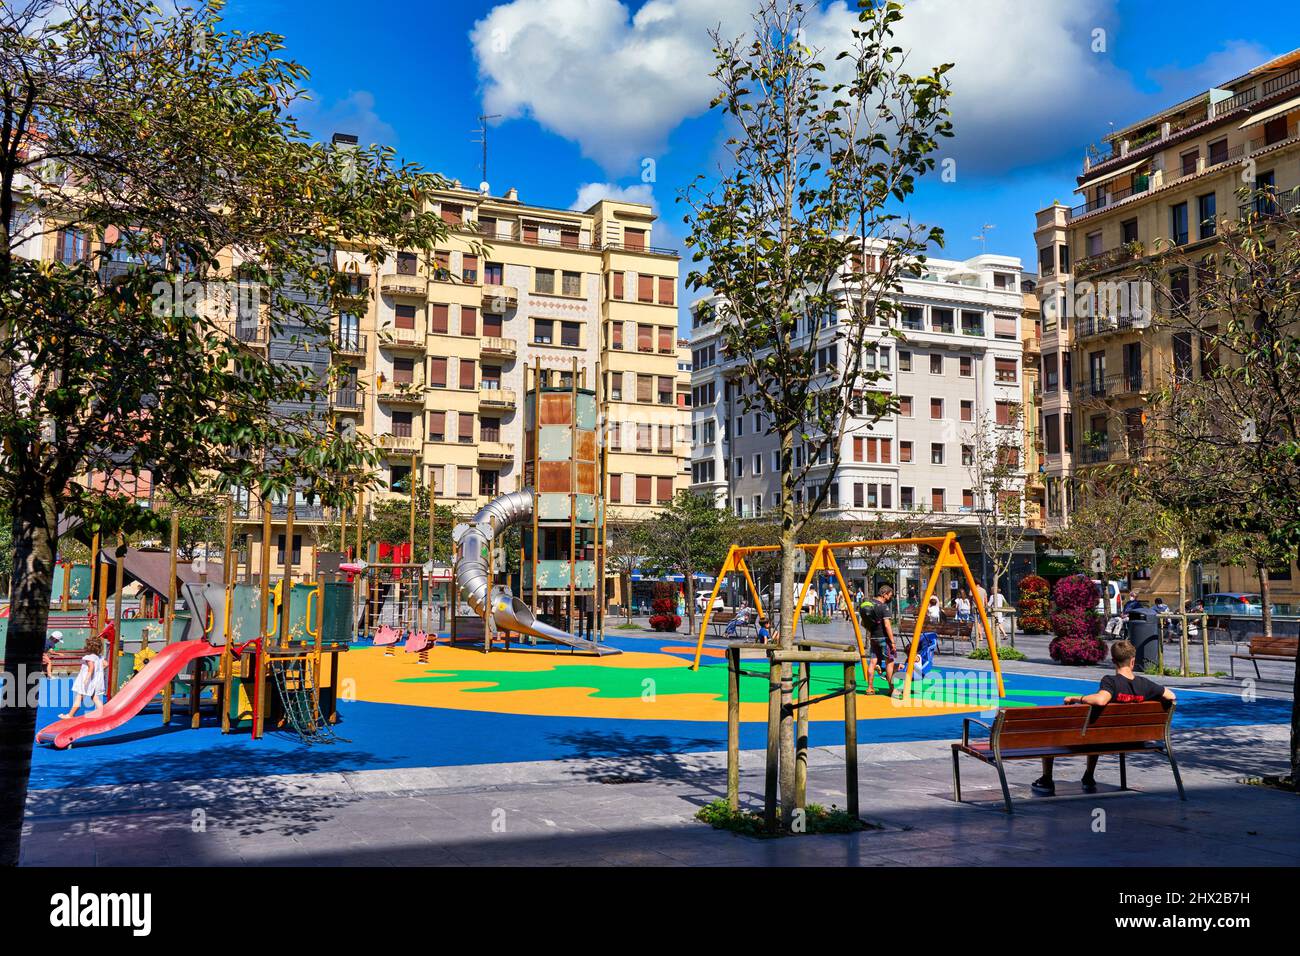 Niños jugando en un patio de recreo, Plaza Cataluña, Barrio de Gros, uno de los barrios más atmosféricos de la ciudad, Donostia, San Sebastián, Foto de stock